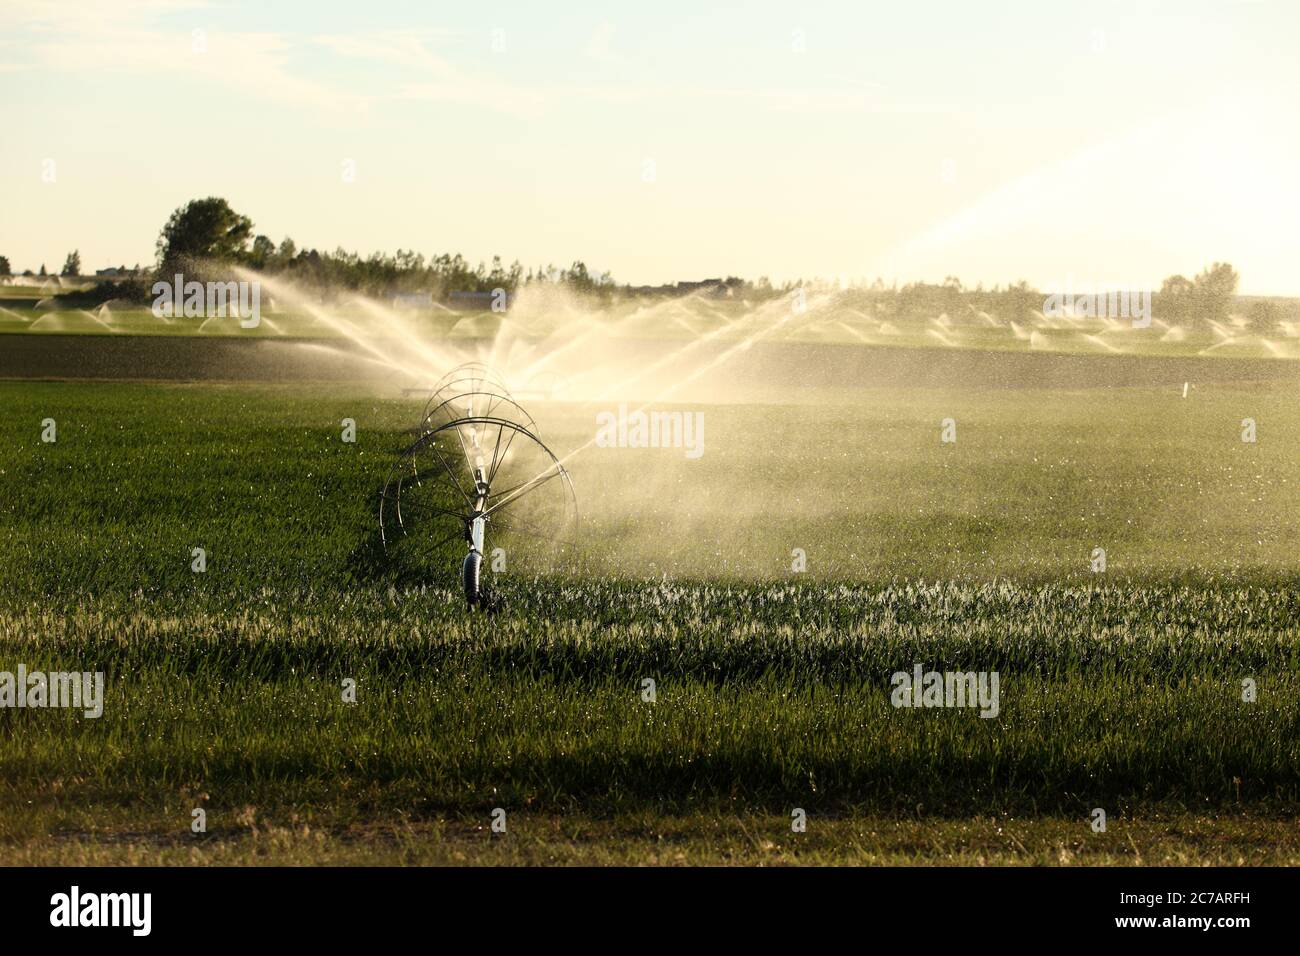 A wheel line sprinkler watering a wheat field in the fertile farm fields of Idaho. Stock Photo